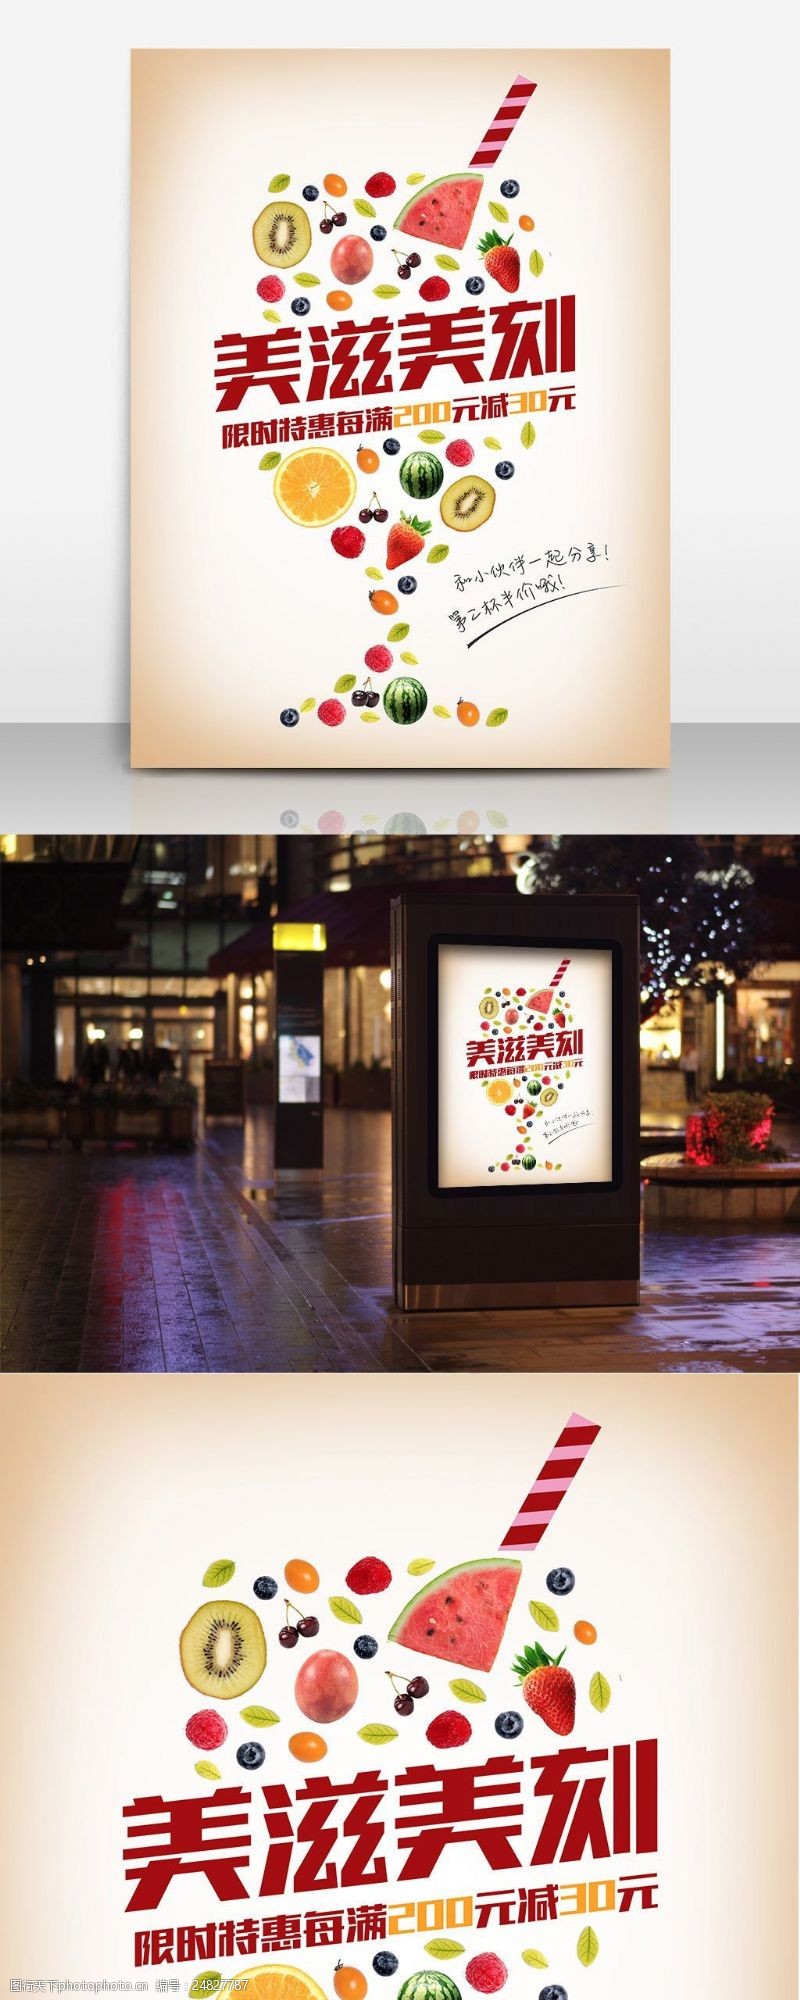 鲜榨果汁免费下载美味果汁饮品创意果汁店促销海报设计